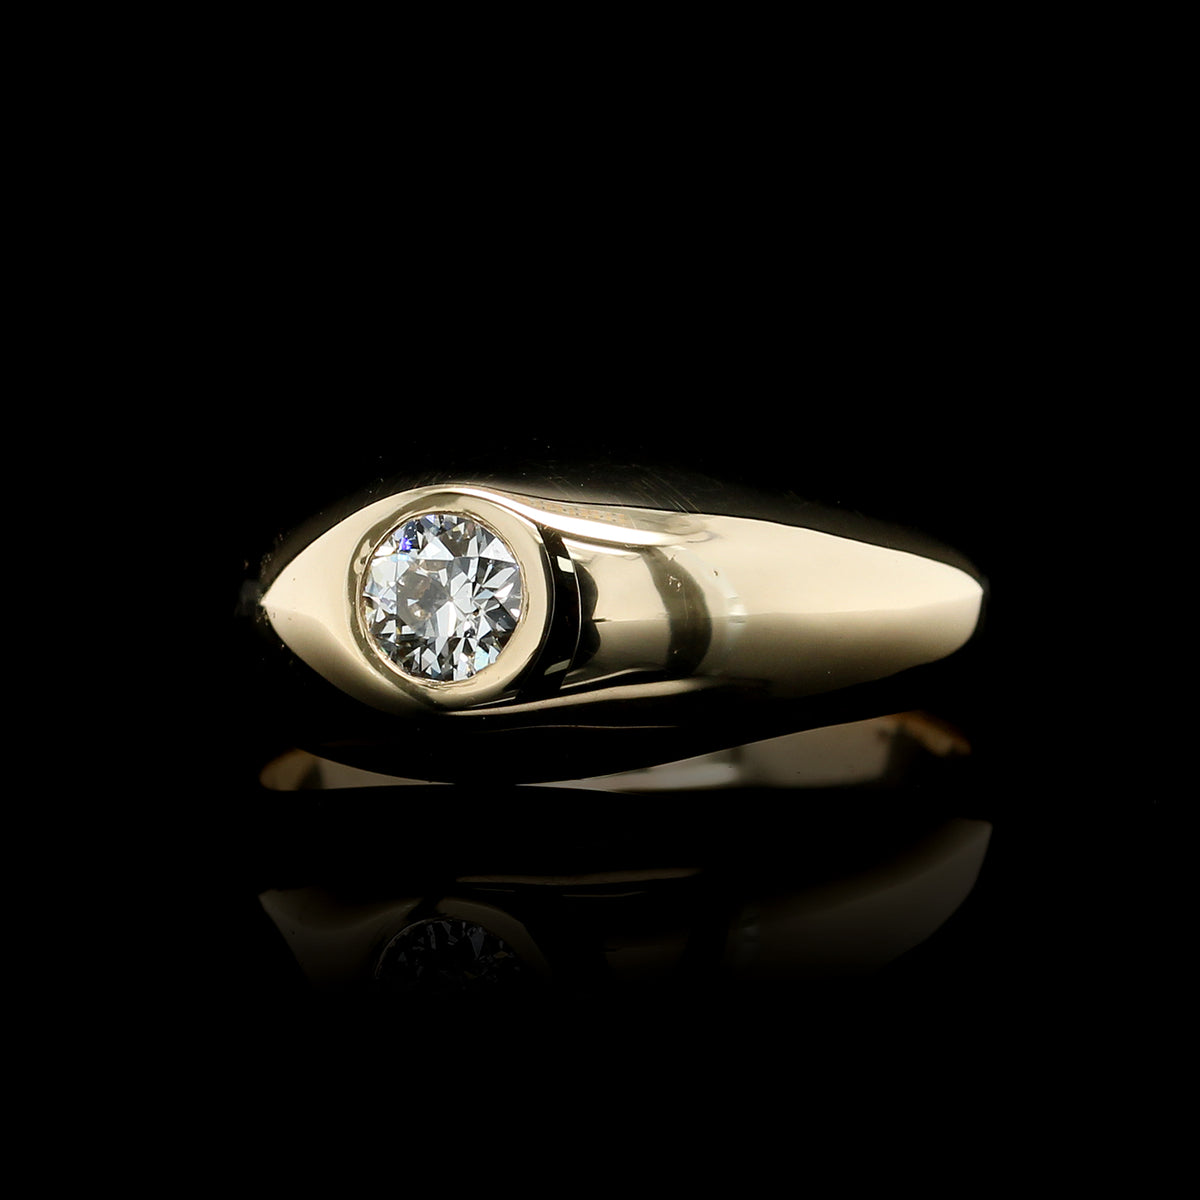 14K Yellow Gold Estate Diamond Ring